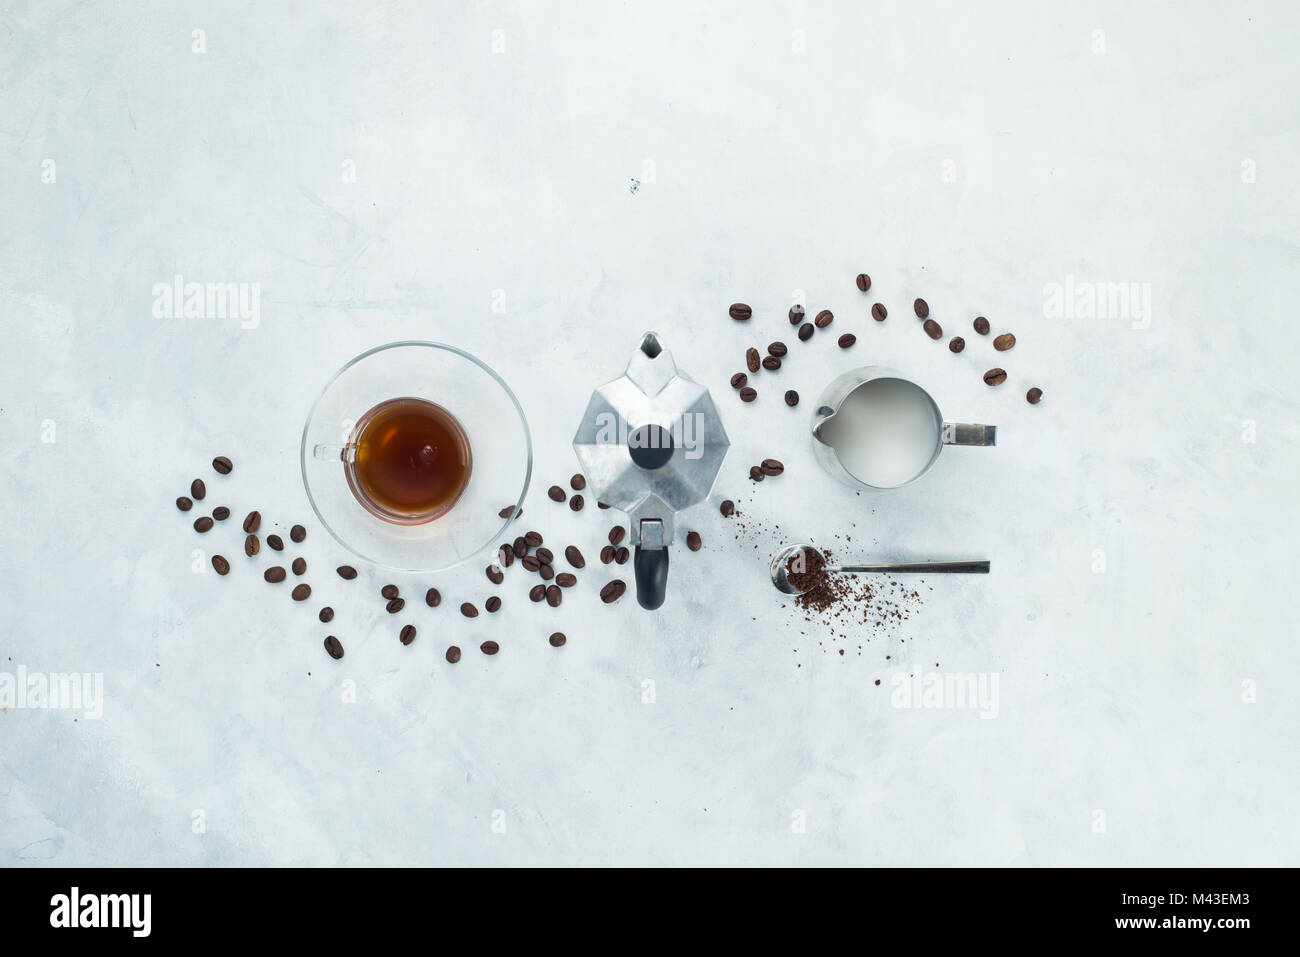 Schneidwerk mit Kaffeemaschine minimalistischen Flachbild mit Kaffeebohnen, Milch, gemahlenen Kaffee und Geysir Kaffeemaschine legen. Alternative brauen. High Key trinken Foto Stockfoto